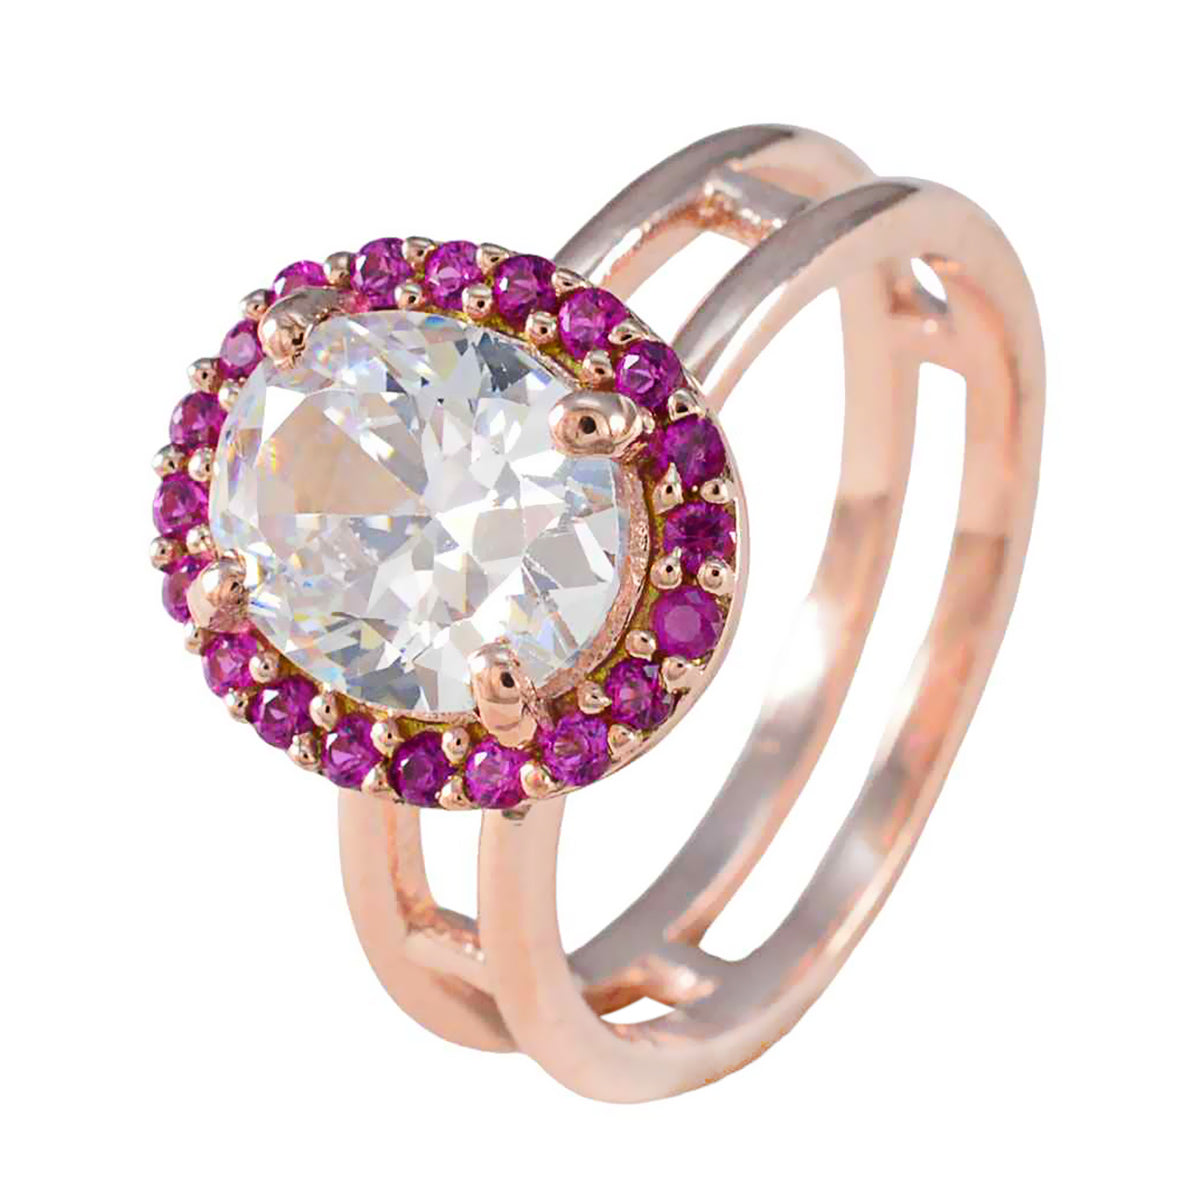 anello in argento di design riyo con placcatura in oro rosa, rubino, pietra cz, forma ovale, montatura a punta, gioielli personalizzati, anello per la festa della mamma